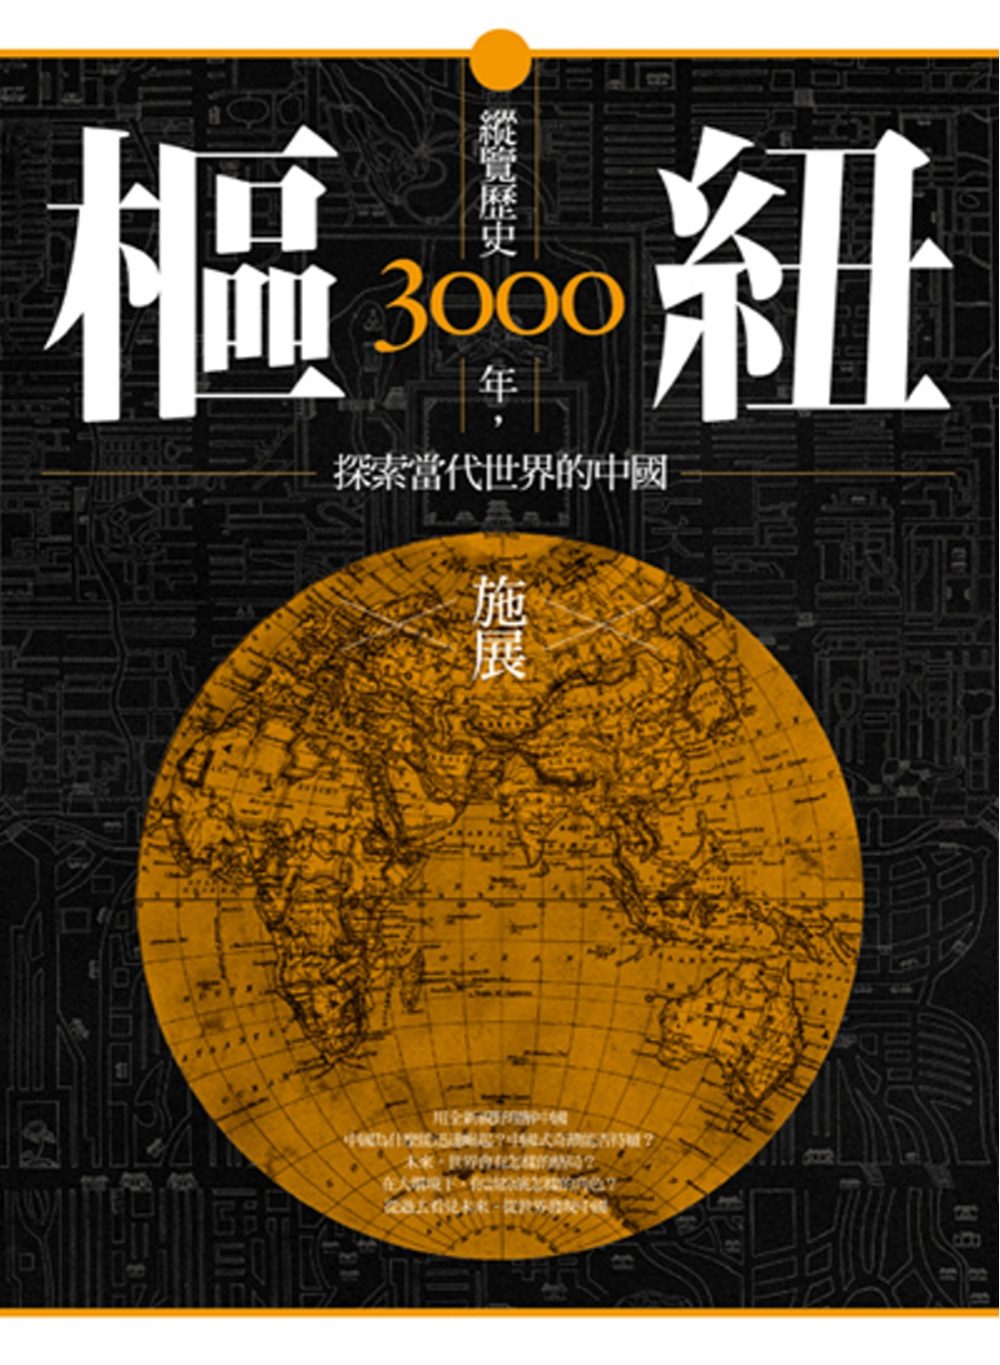 樞紐：縱覽歷史3000年，探索當代世界的中國